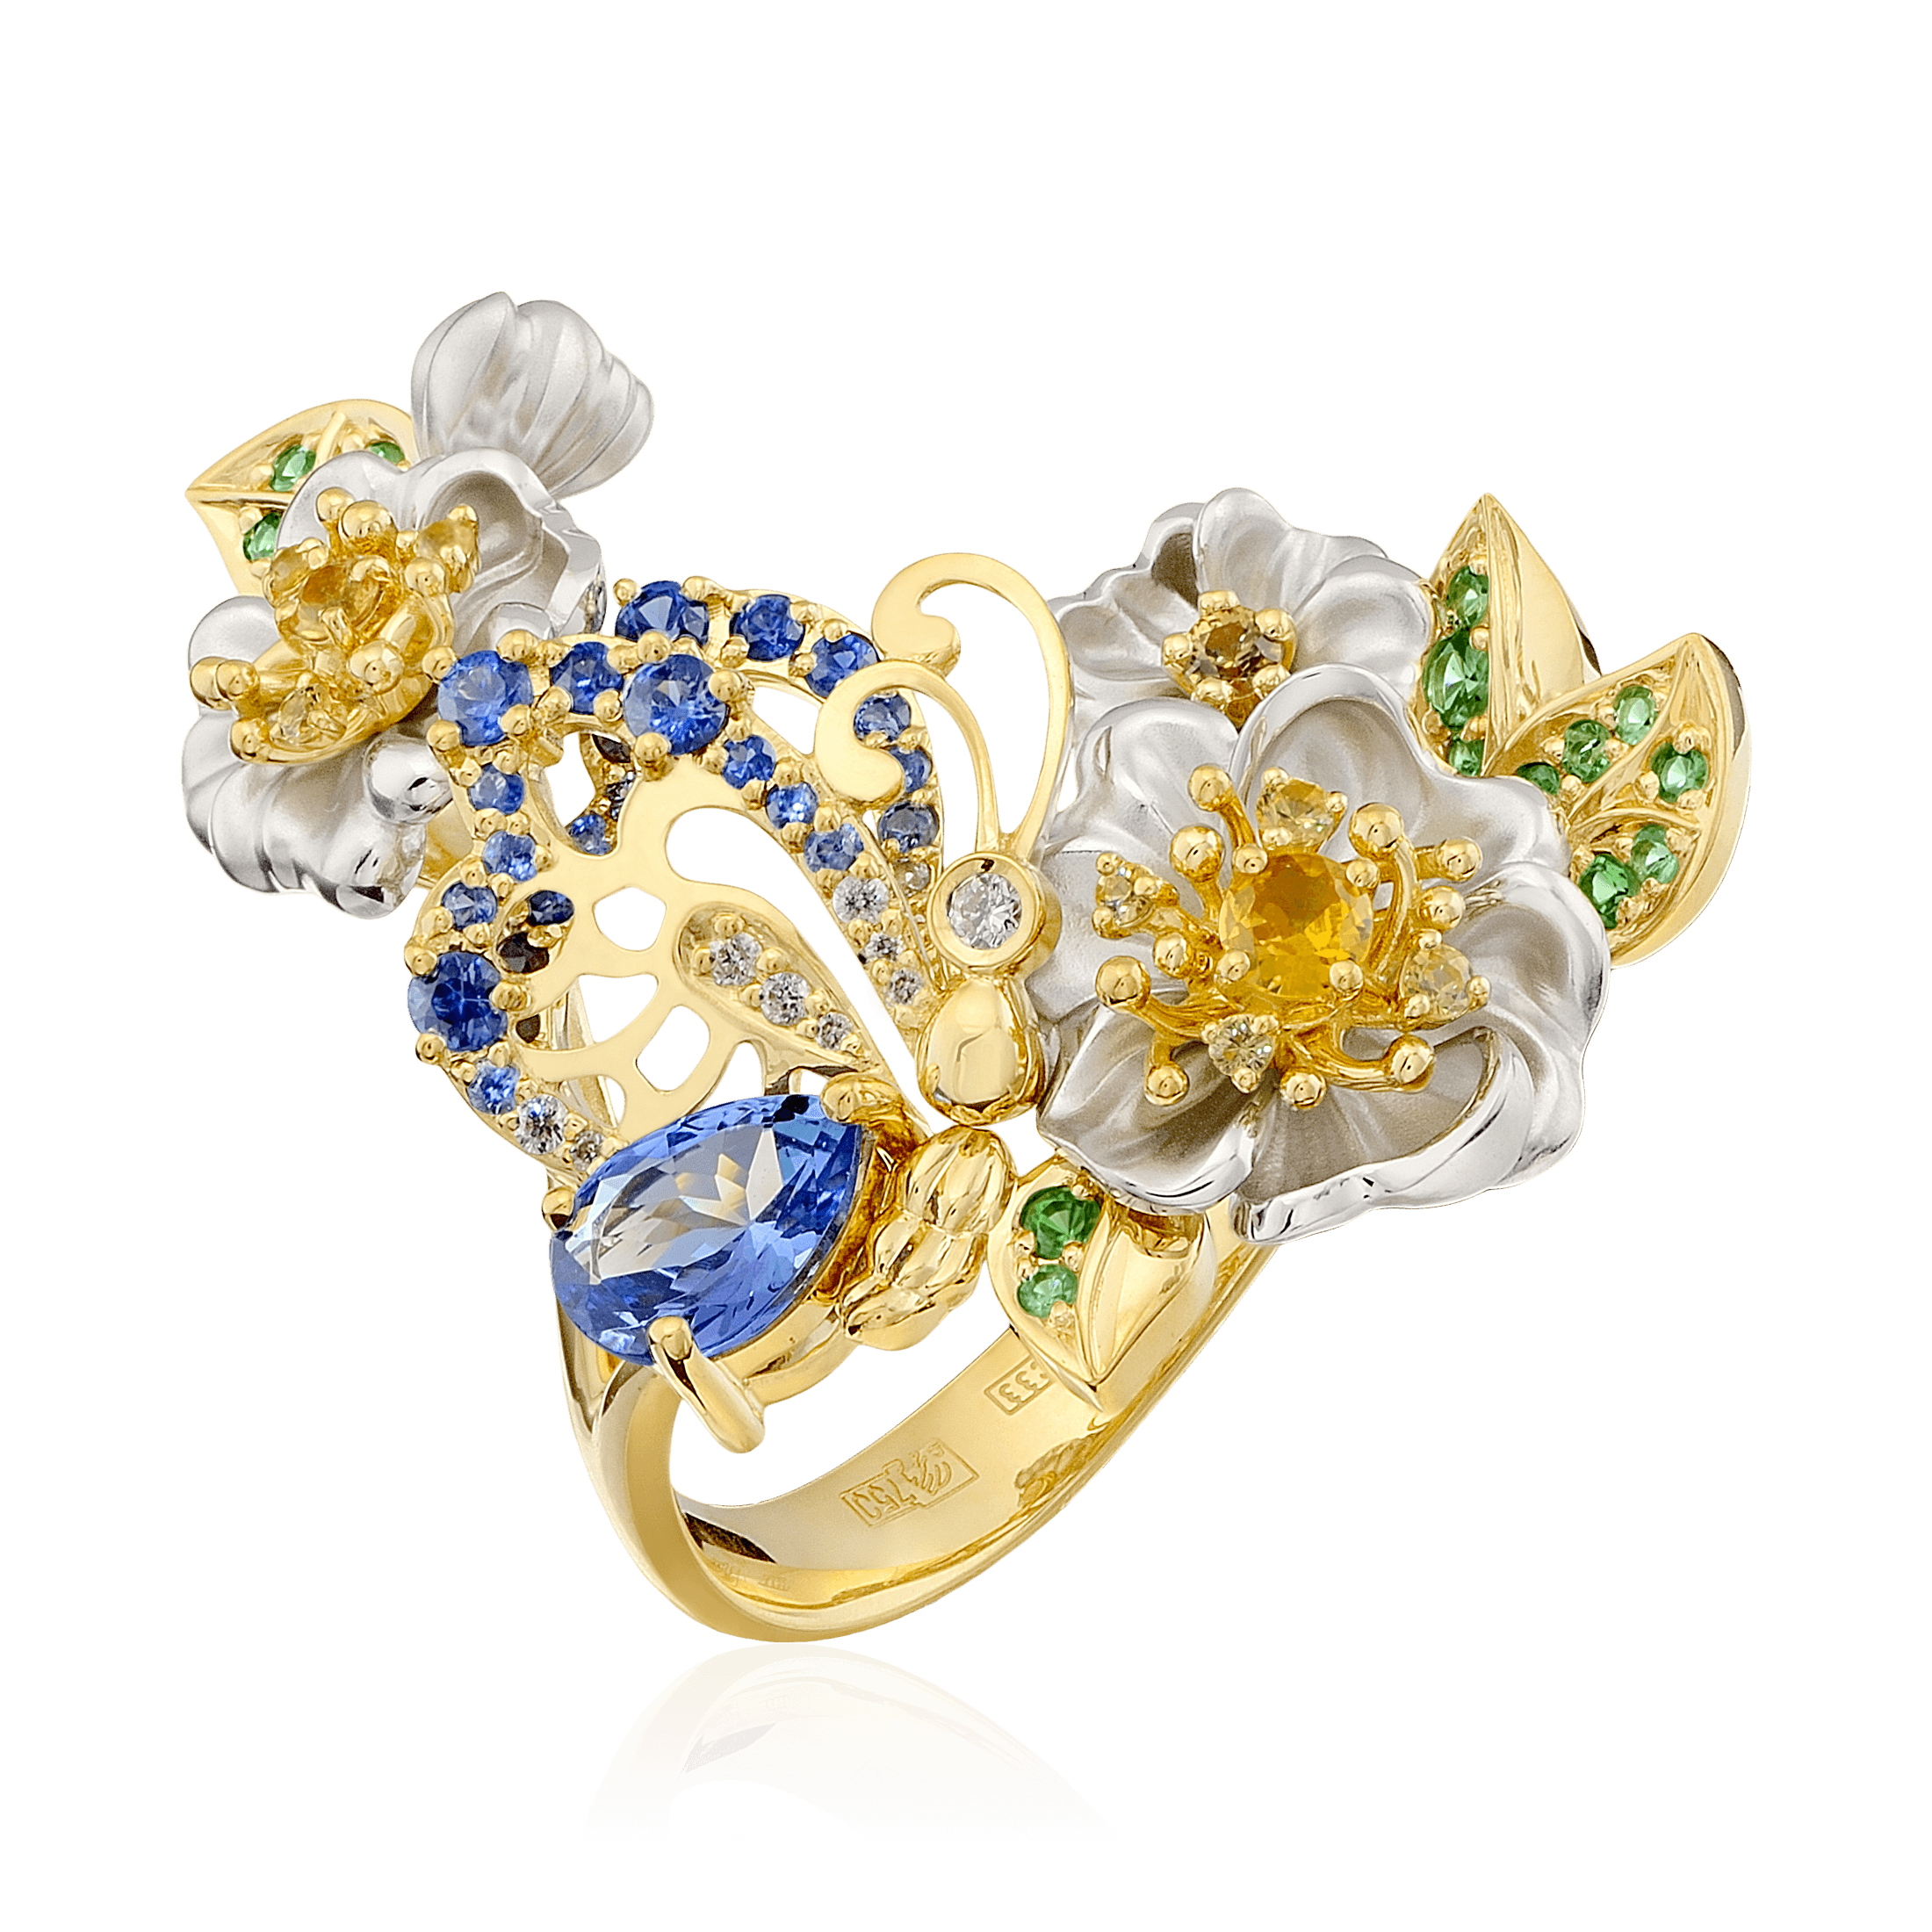 Кольцо Цветы с танзанитом, сапфиром, бриллиантами, тсаворитом из желтого золота 750 пробы (арт. 99418)